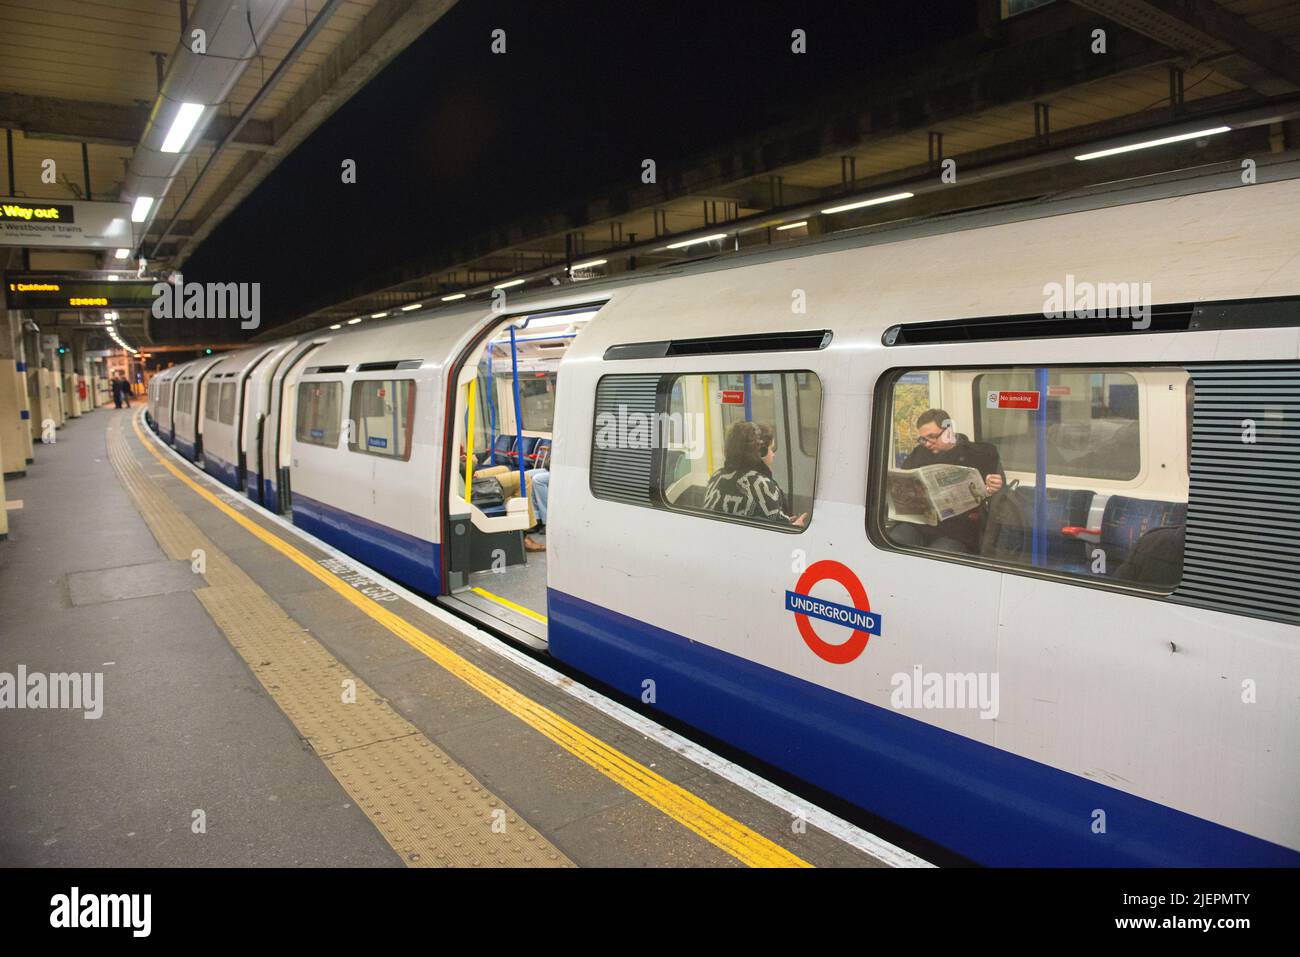 Londra, Regno Unito. Appena arriva il treno della metropolitana in attesa di partenza dalla stazione della metropolitana di Acton Town per trasportare pendolari in tarda notte in tutta la capitale britannica. Foto Stock